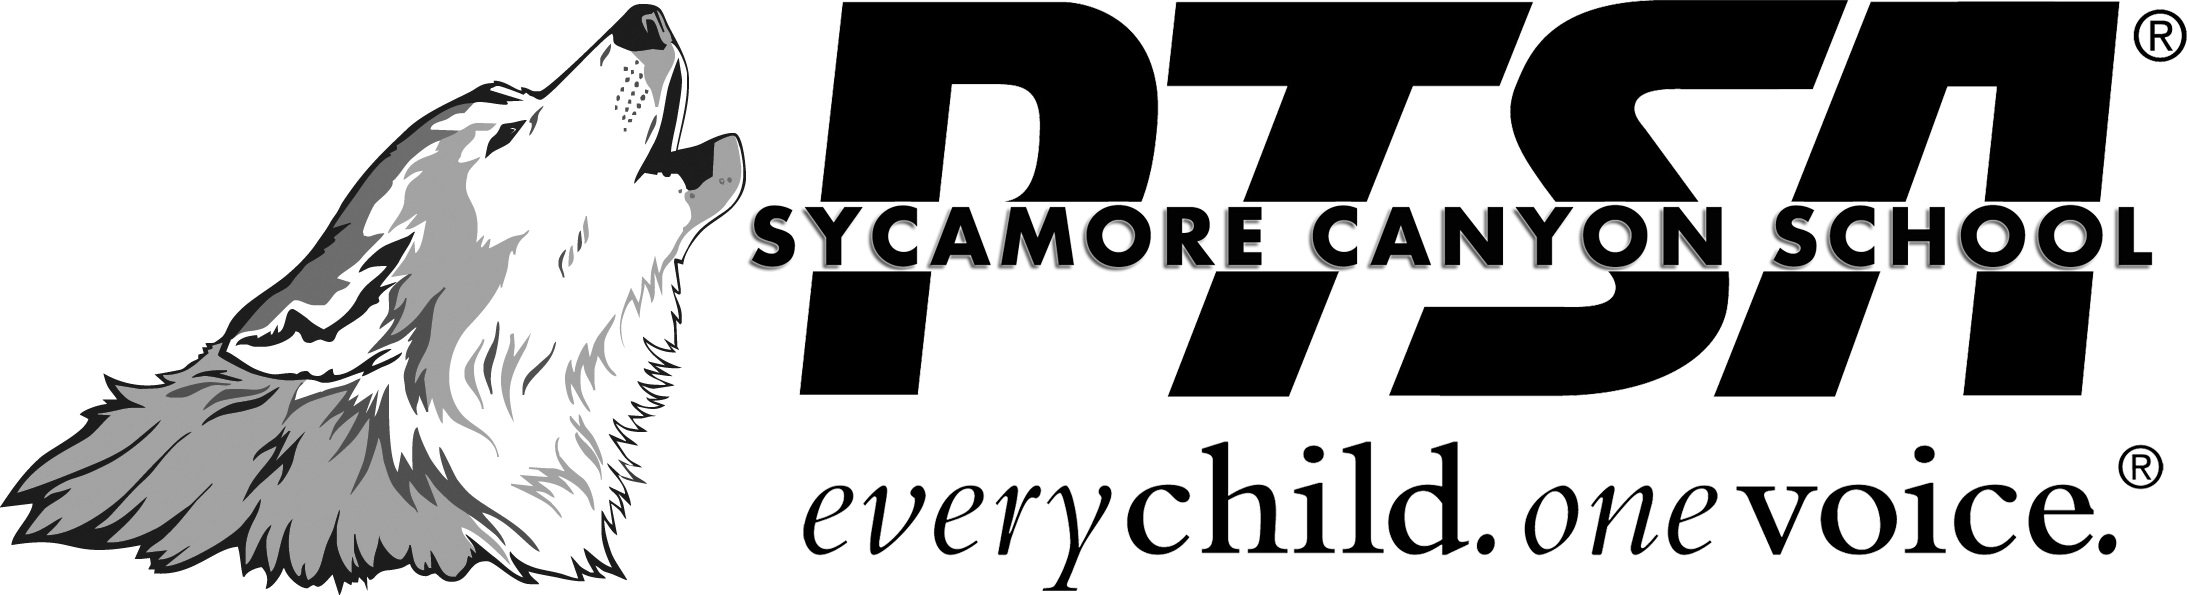 Sycamore Canyon School PTSA